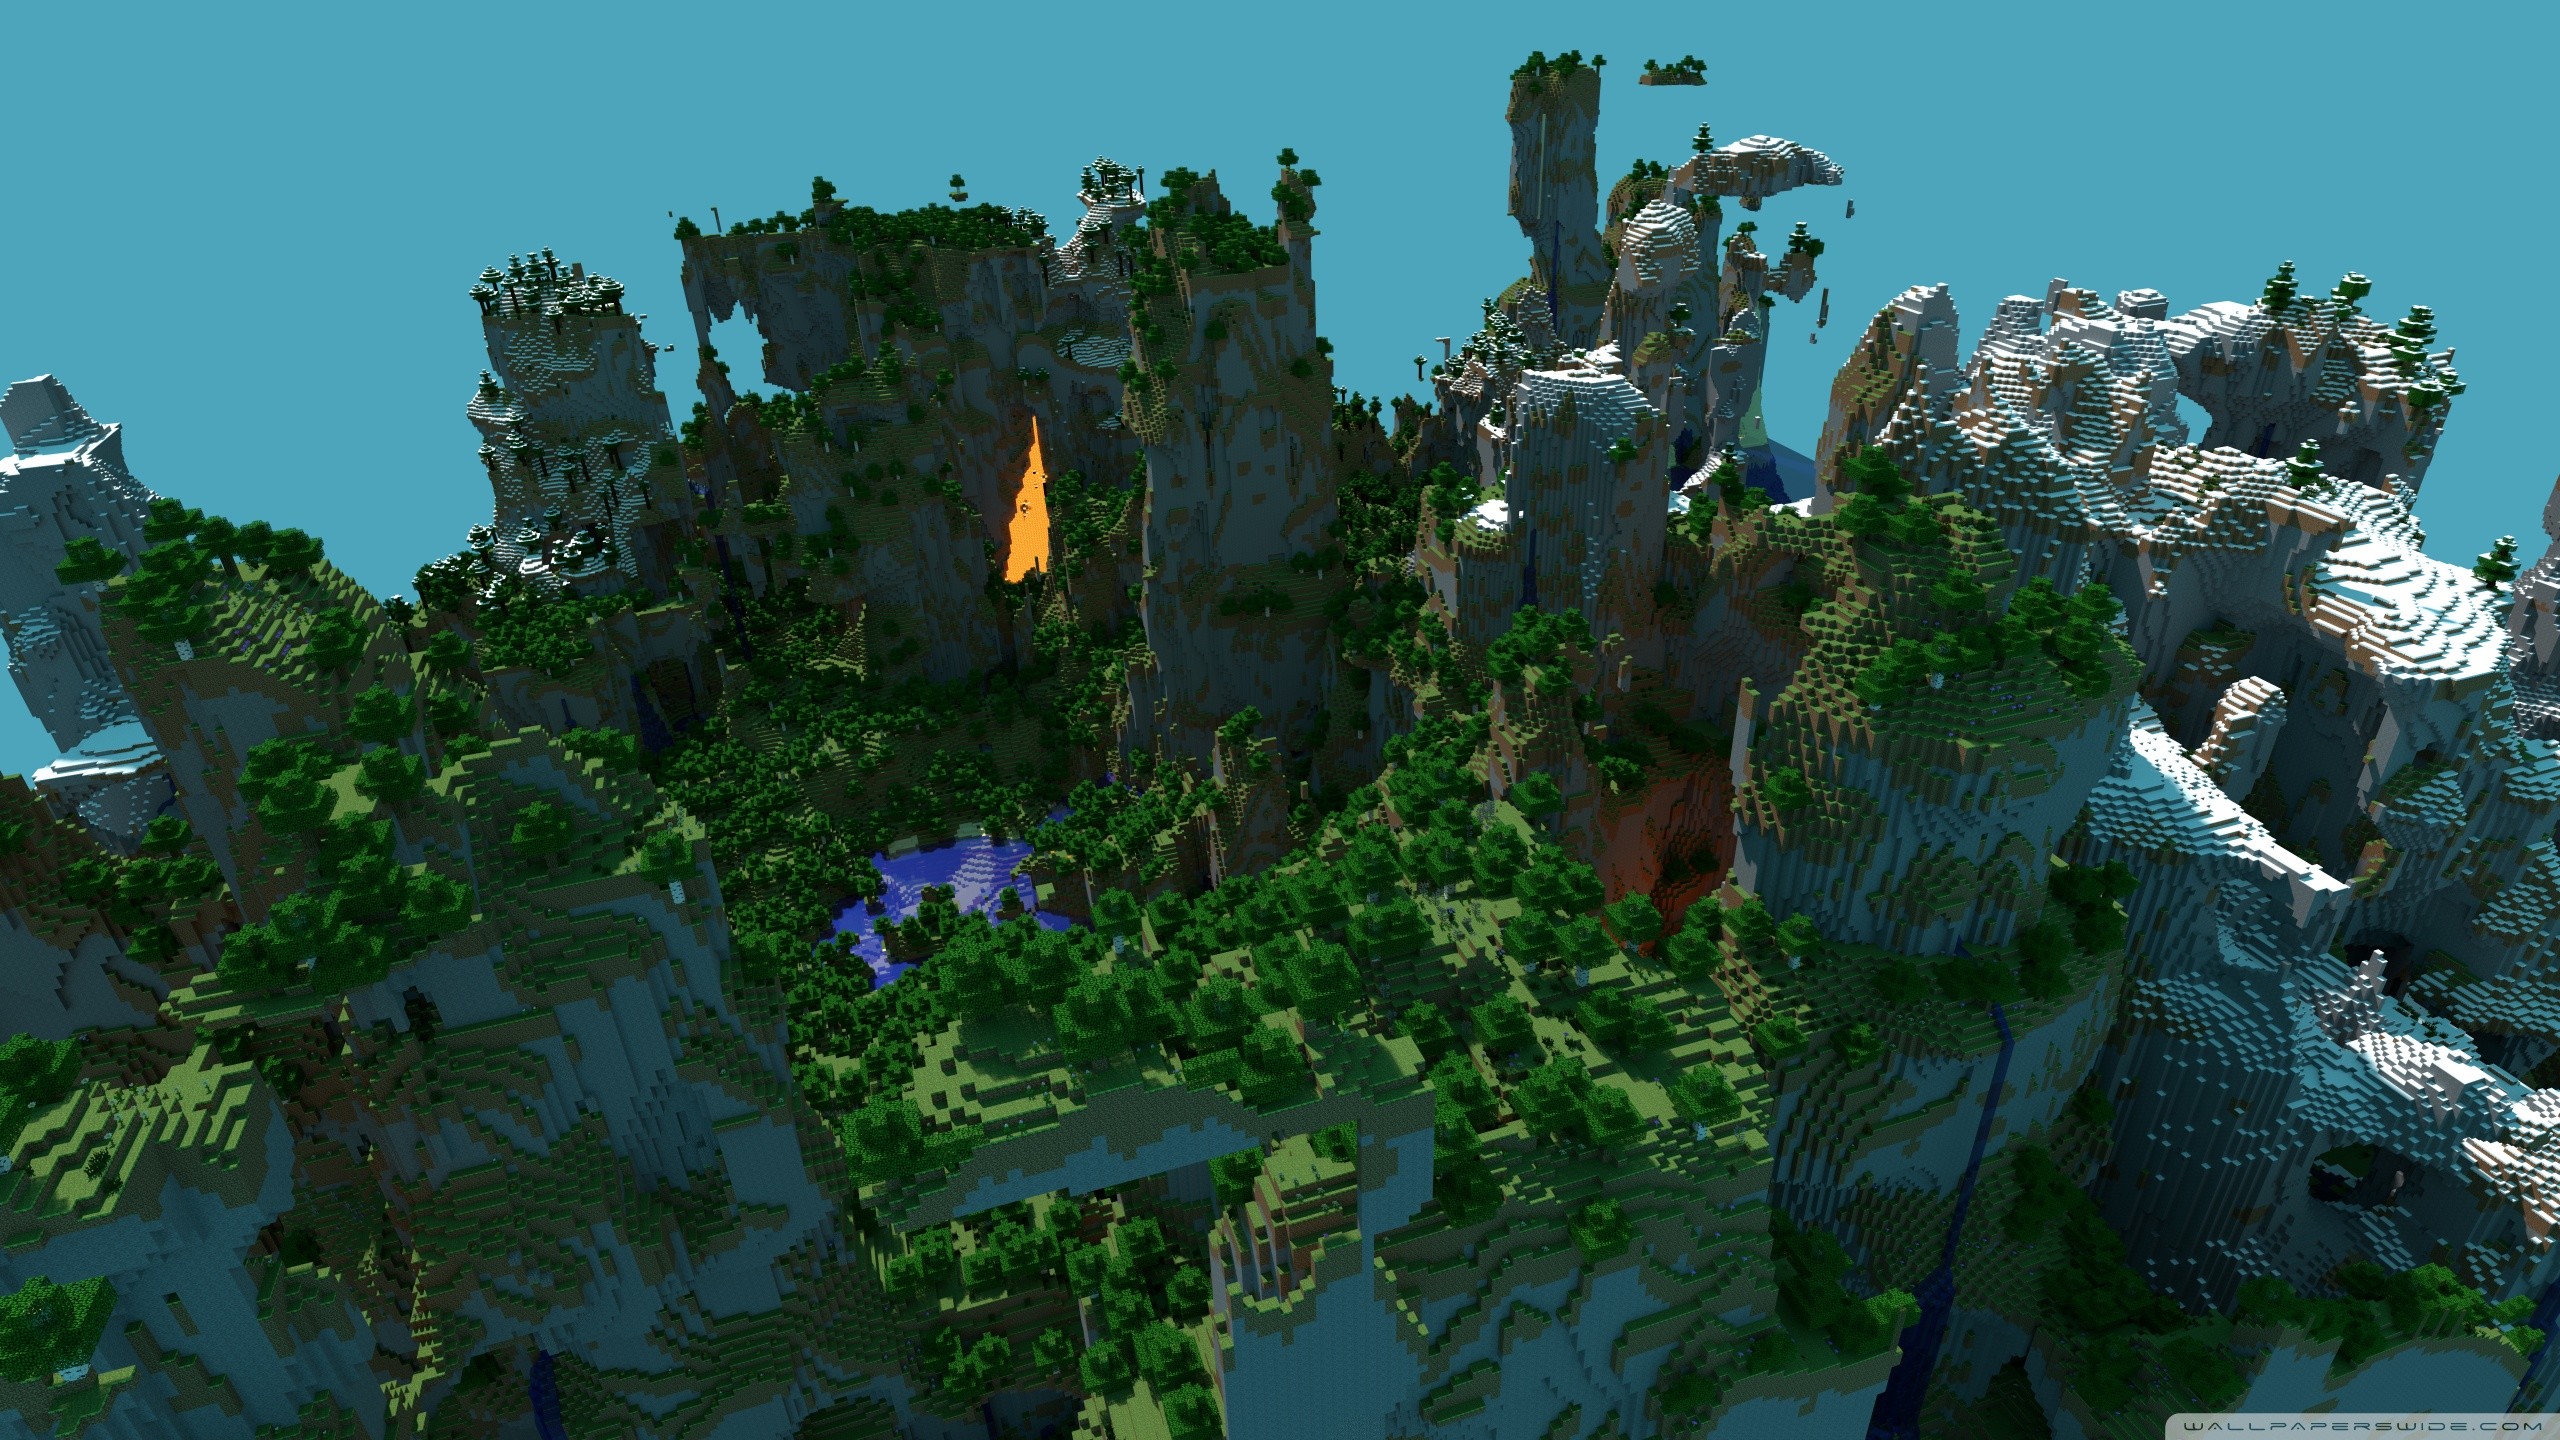 2560x1440 ... Minecraft Landscape Wallpaper | 1680x1050 | ID:41520 .